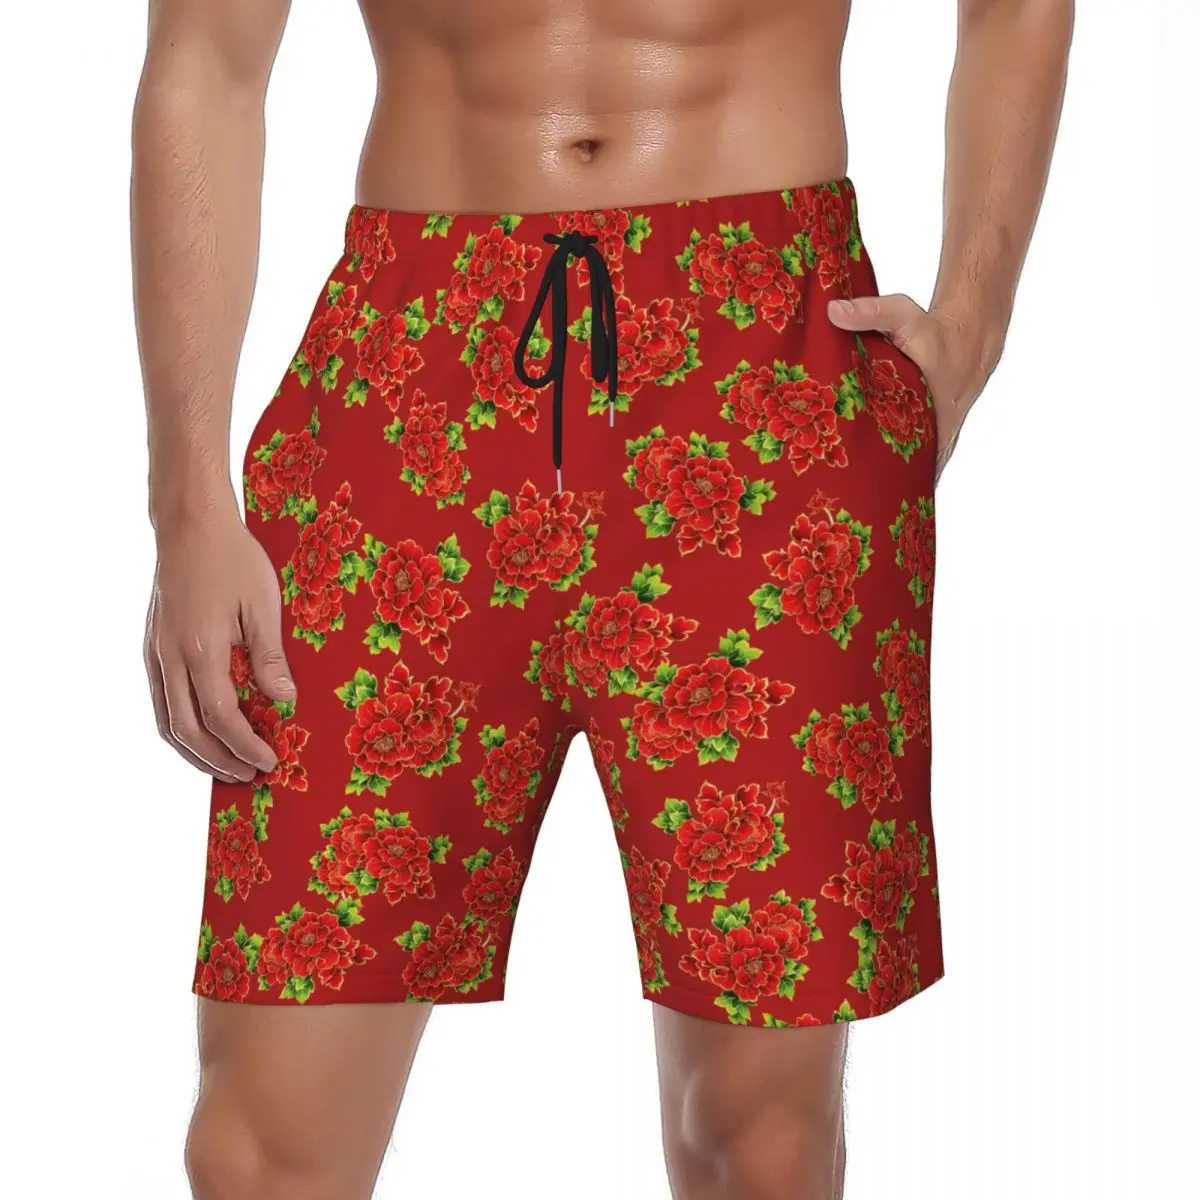 

Шорты спортивные North Y2K мужские, быстросохнущие спортивные пляжные короткие штаны с большими цветами, в стиле ретро, для празднования летом, большие размеры